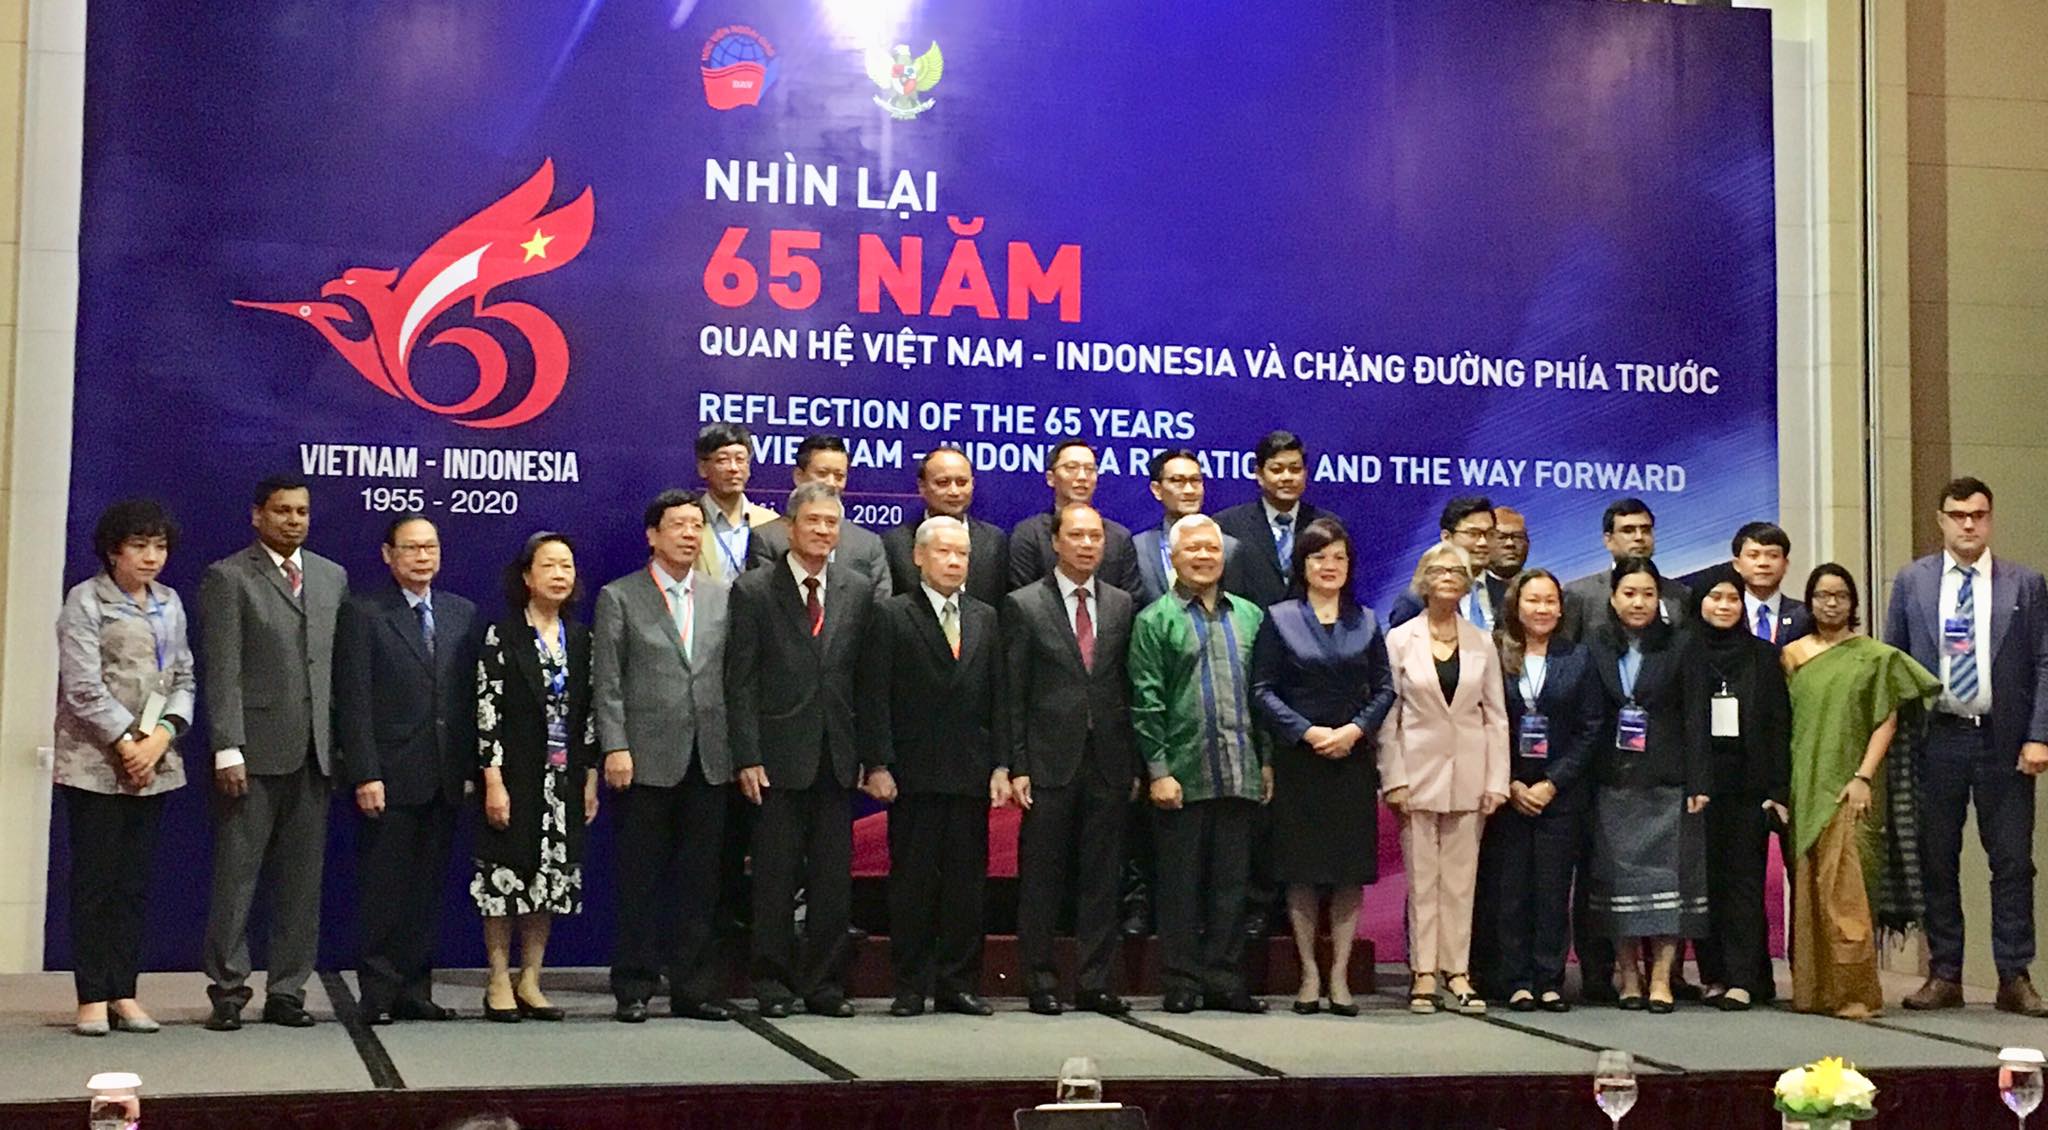 Quan hệ Việt Nam - Indonesia: Quan hệ giữa Việt Nam và Indonesia được xem là mối quan hệ đối tác chiến lược. Những hình ảnh về quan hệ giữa hai nước được cập nhật liên tục và được chia sẻ tại đây. Qua đó, bạn sẽ hiểu hơn về sự đồng tình, hỗ trợ và tình đoàn kết giữa hai quốc gia.